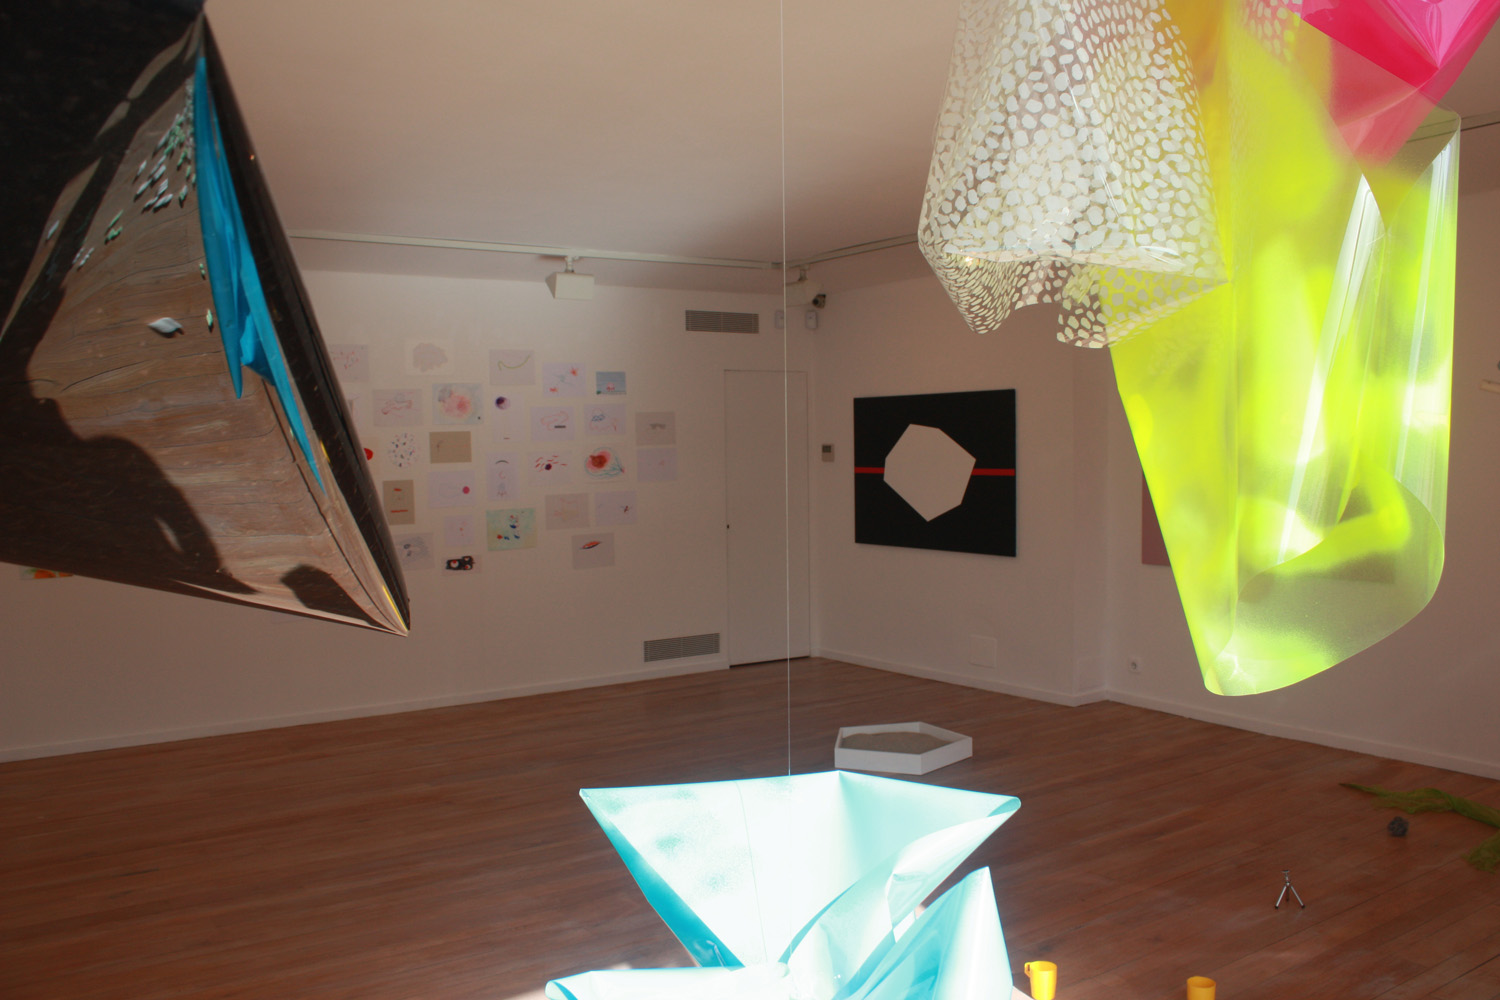 Exhibition view Conmociones in the Galeria Maior of Pollença, 2014